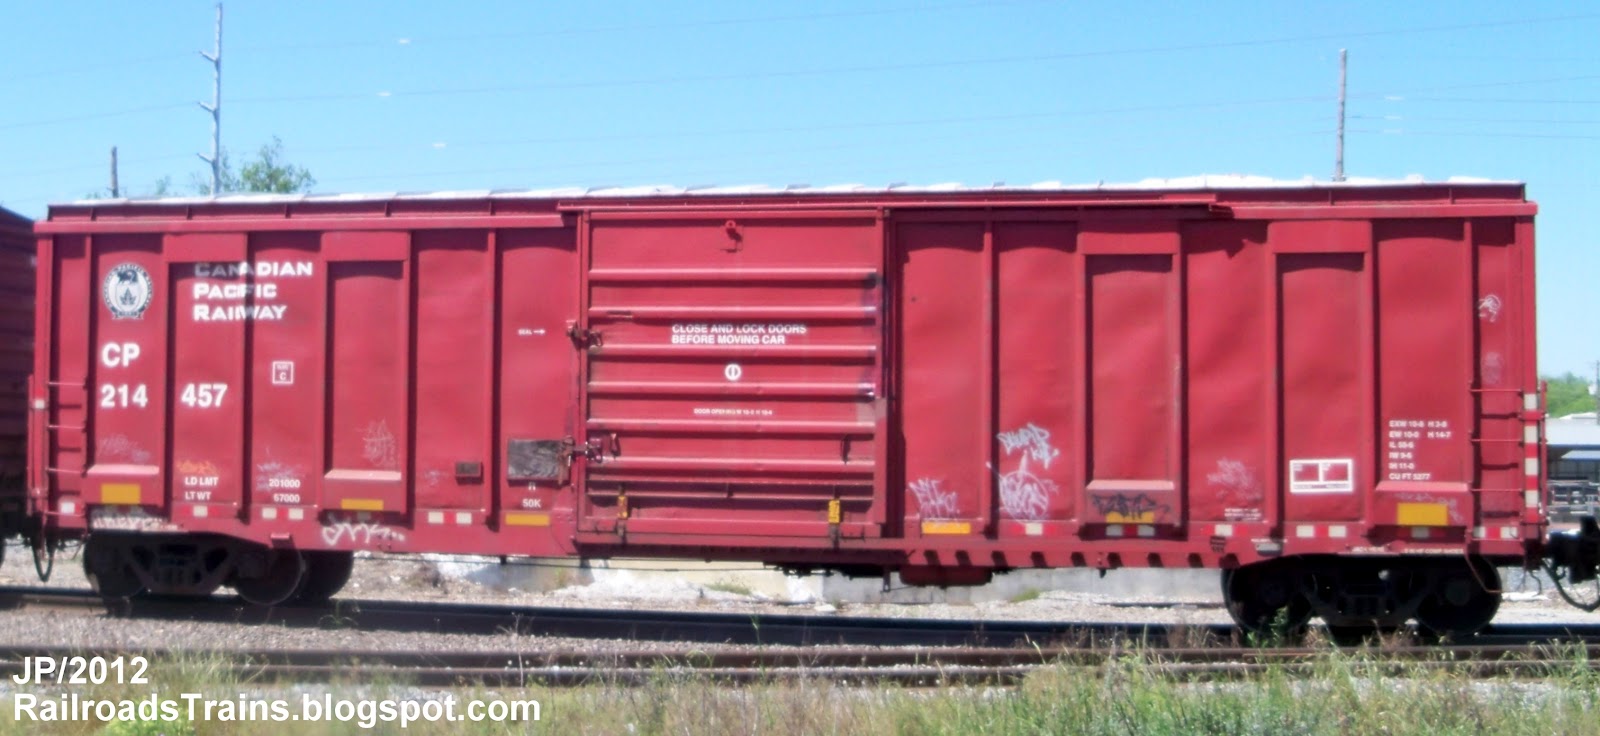 RAILROAD Freight Train Locomotive Engine EMD GE Boxcar BNSF,CSX,FEC 